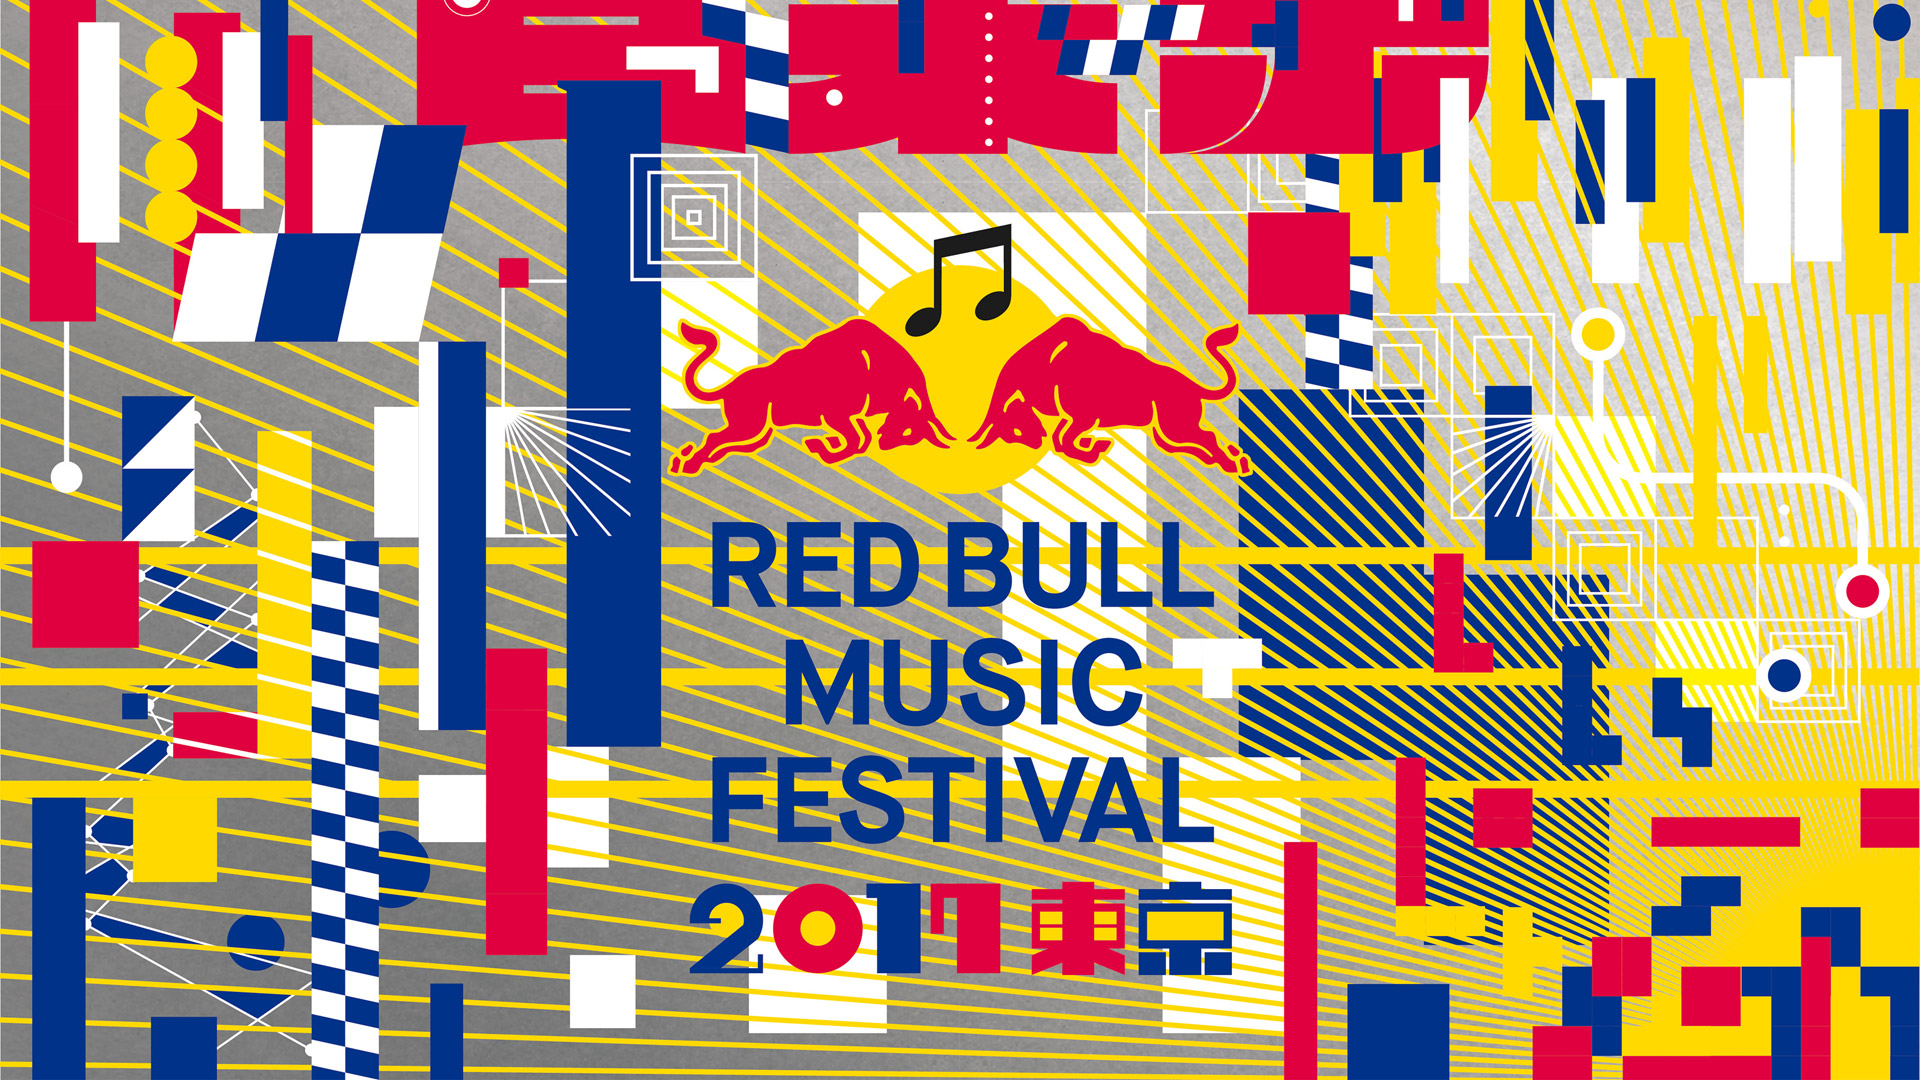 Red Bull Music Festival Tokyo